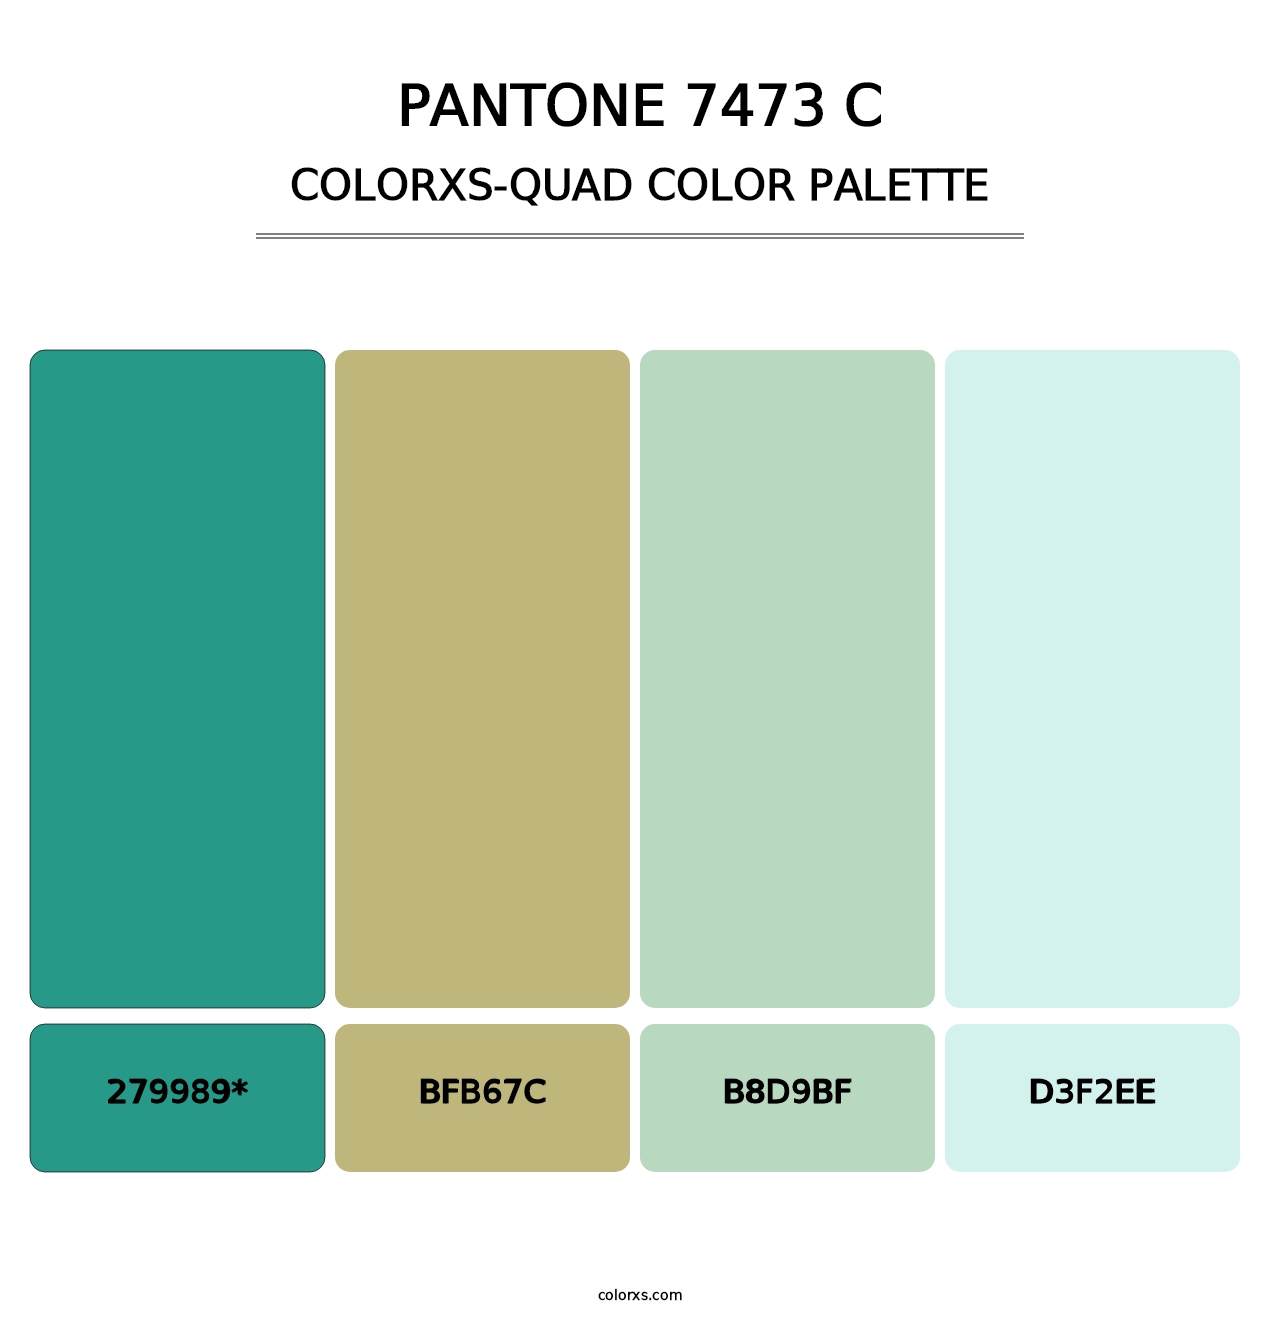 PANTONE 7473 C - Colorxs Quad Palette